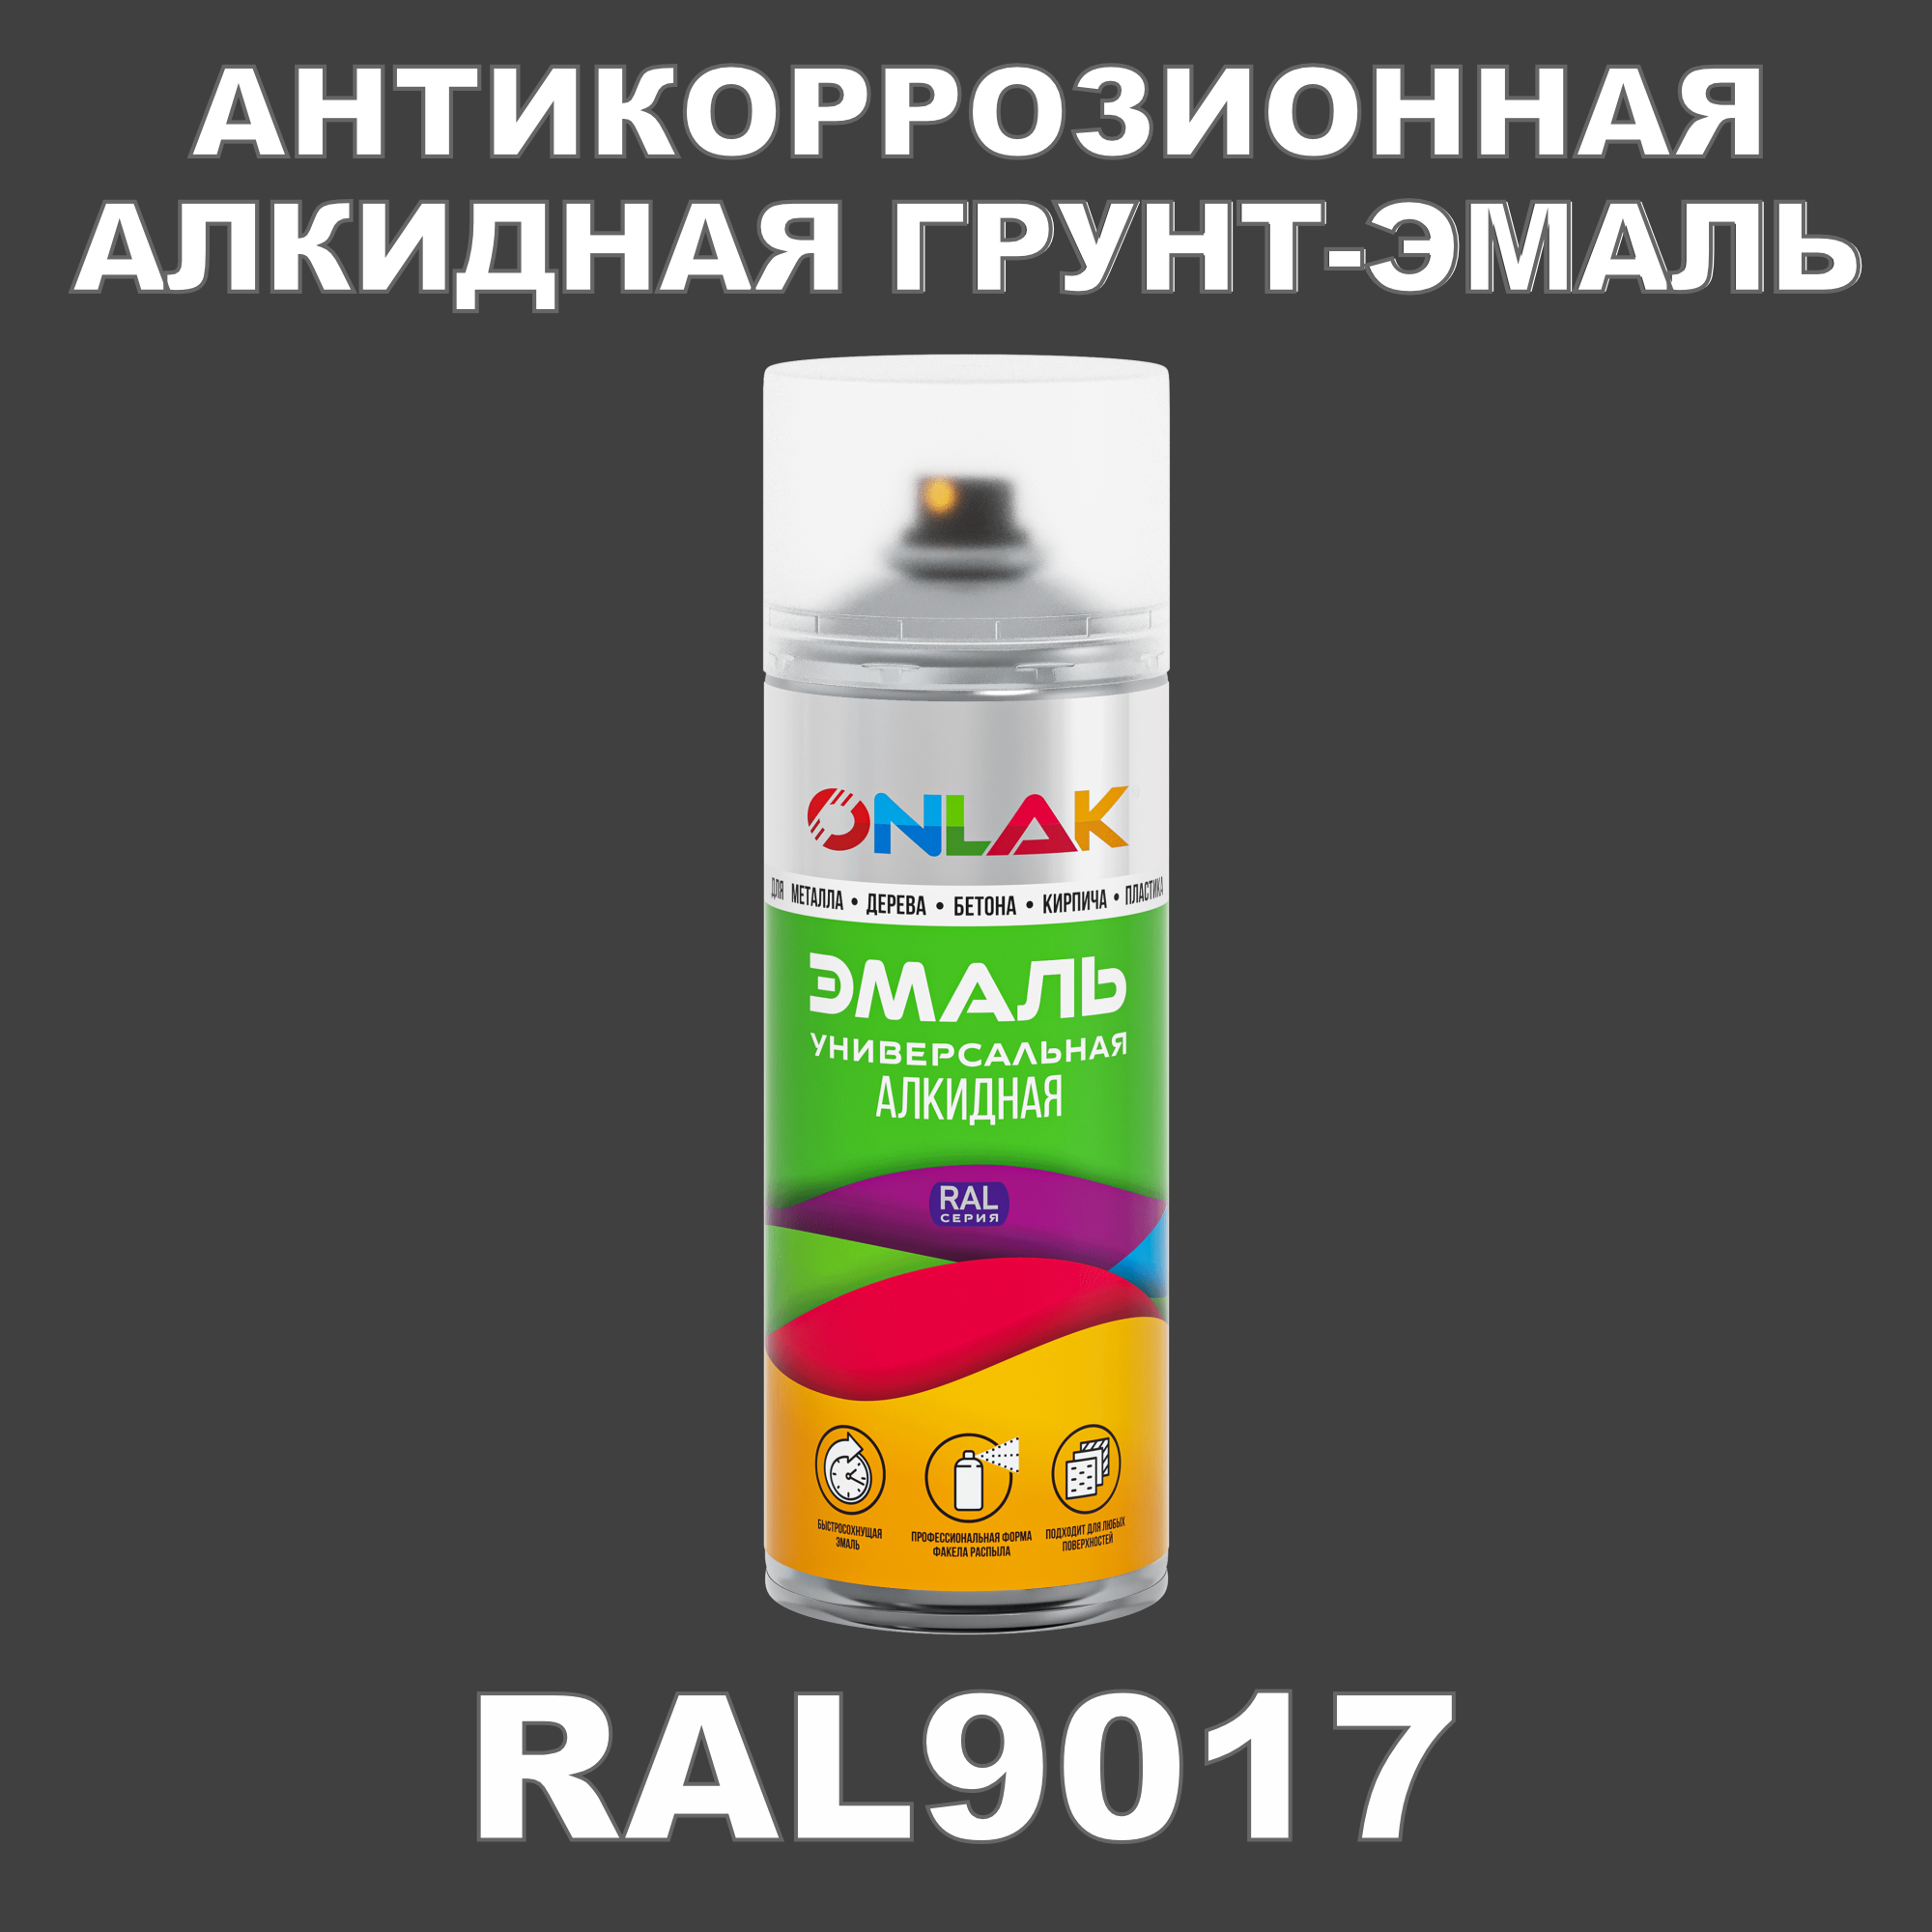 Антикоррозионная грунт-эмаль ONLAK RAL9017 полуматовая для металла и защиты от ржавчины